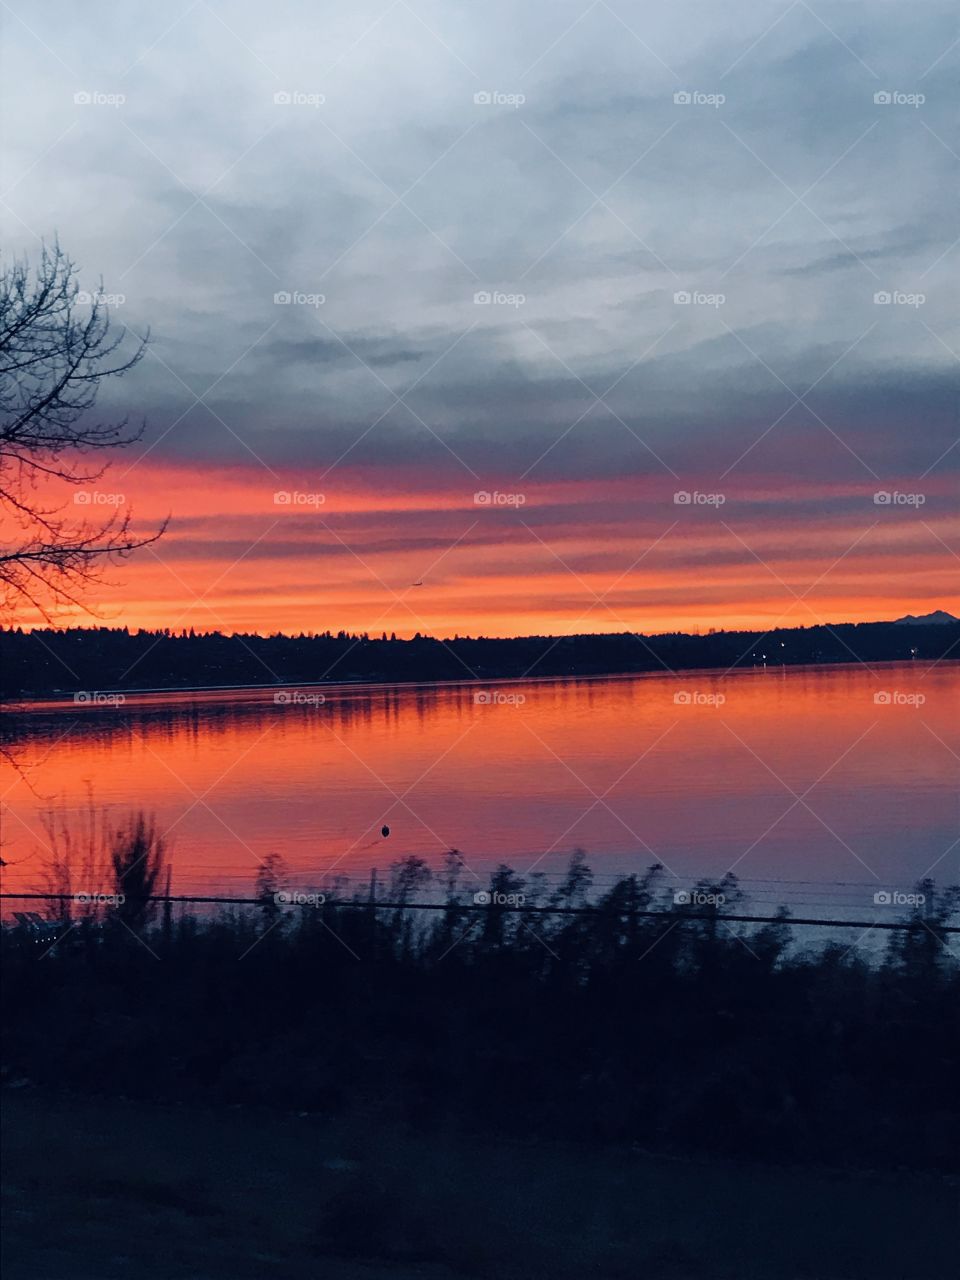 Sunset over Lake Washington 